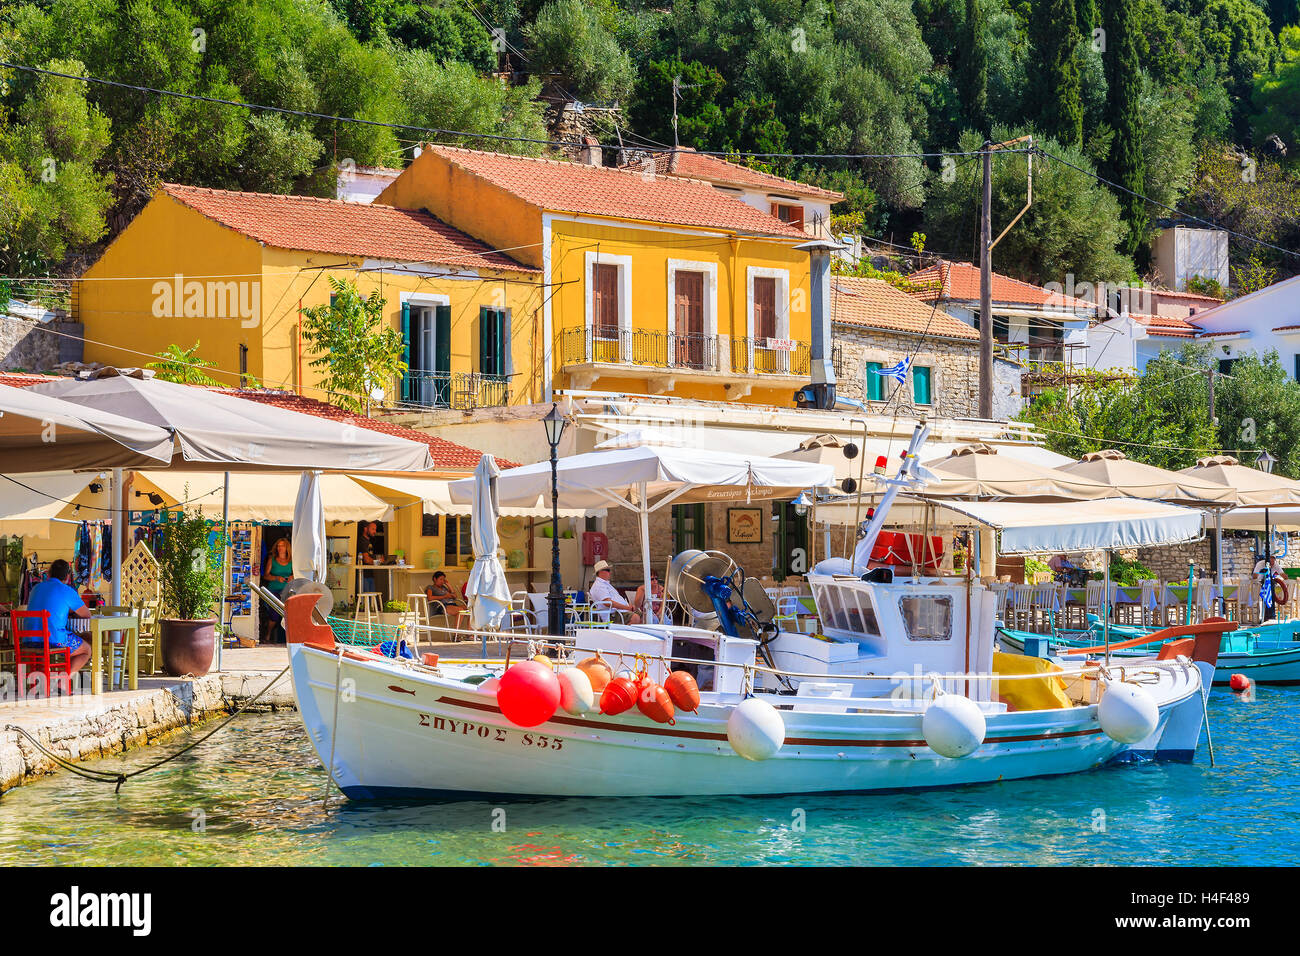 KIONI PORTA, Itaca isola - Sep 19, 2014: barca da pesca sul mare turchese acqua Kioni in porto con le sue case colorate. La Grecia è molto popolare meta di vacanza in Europa. Foto Stock